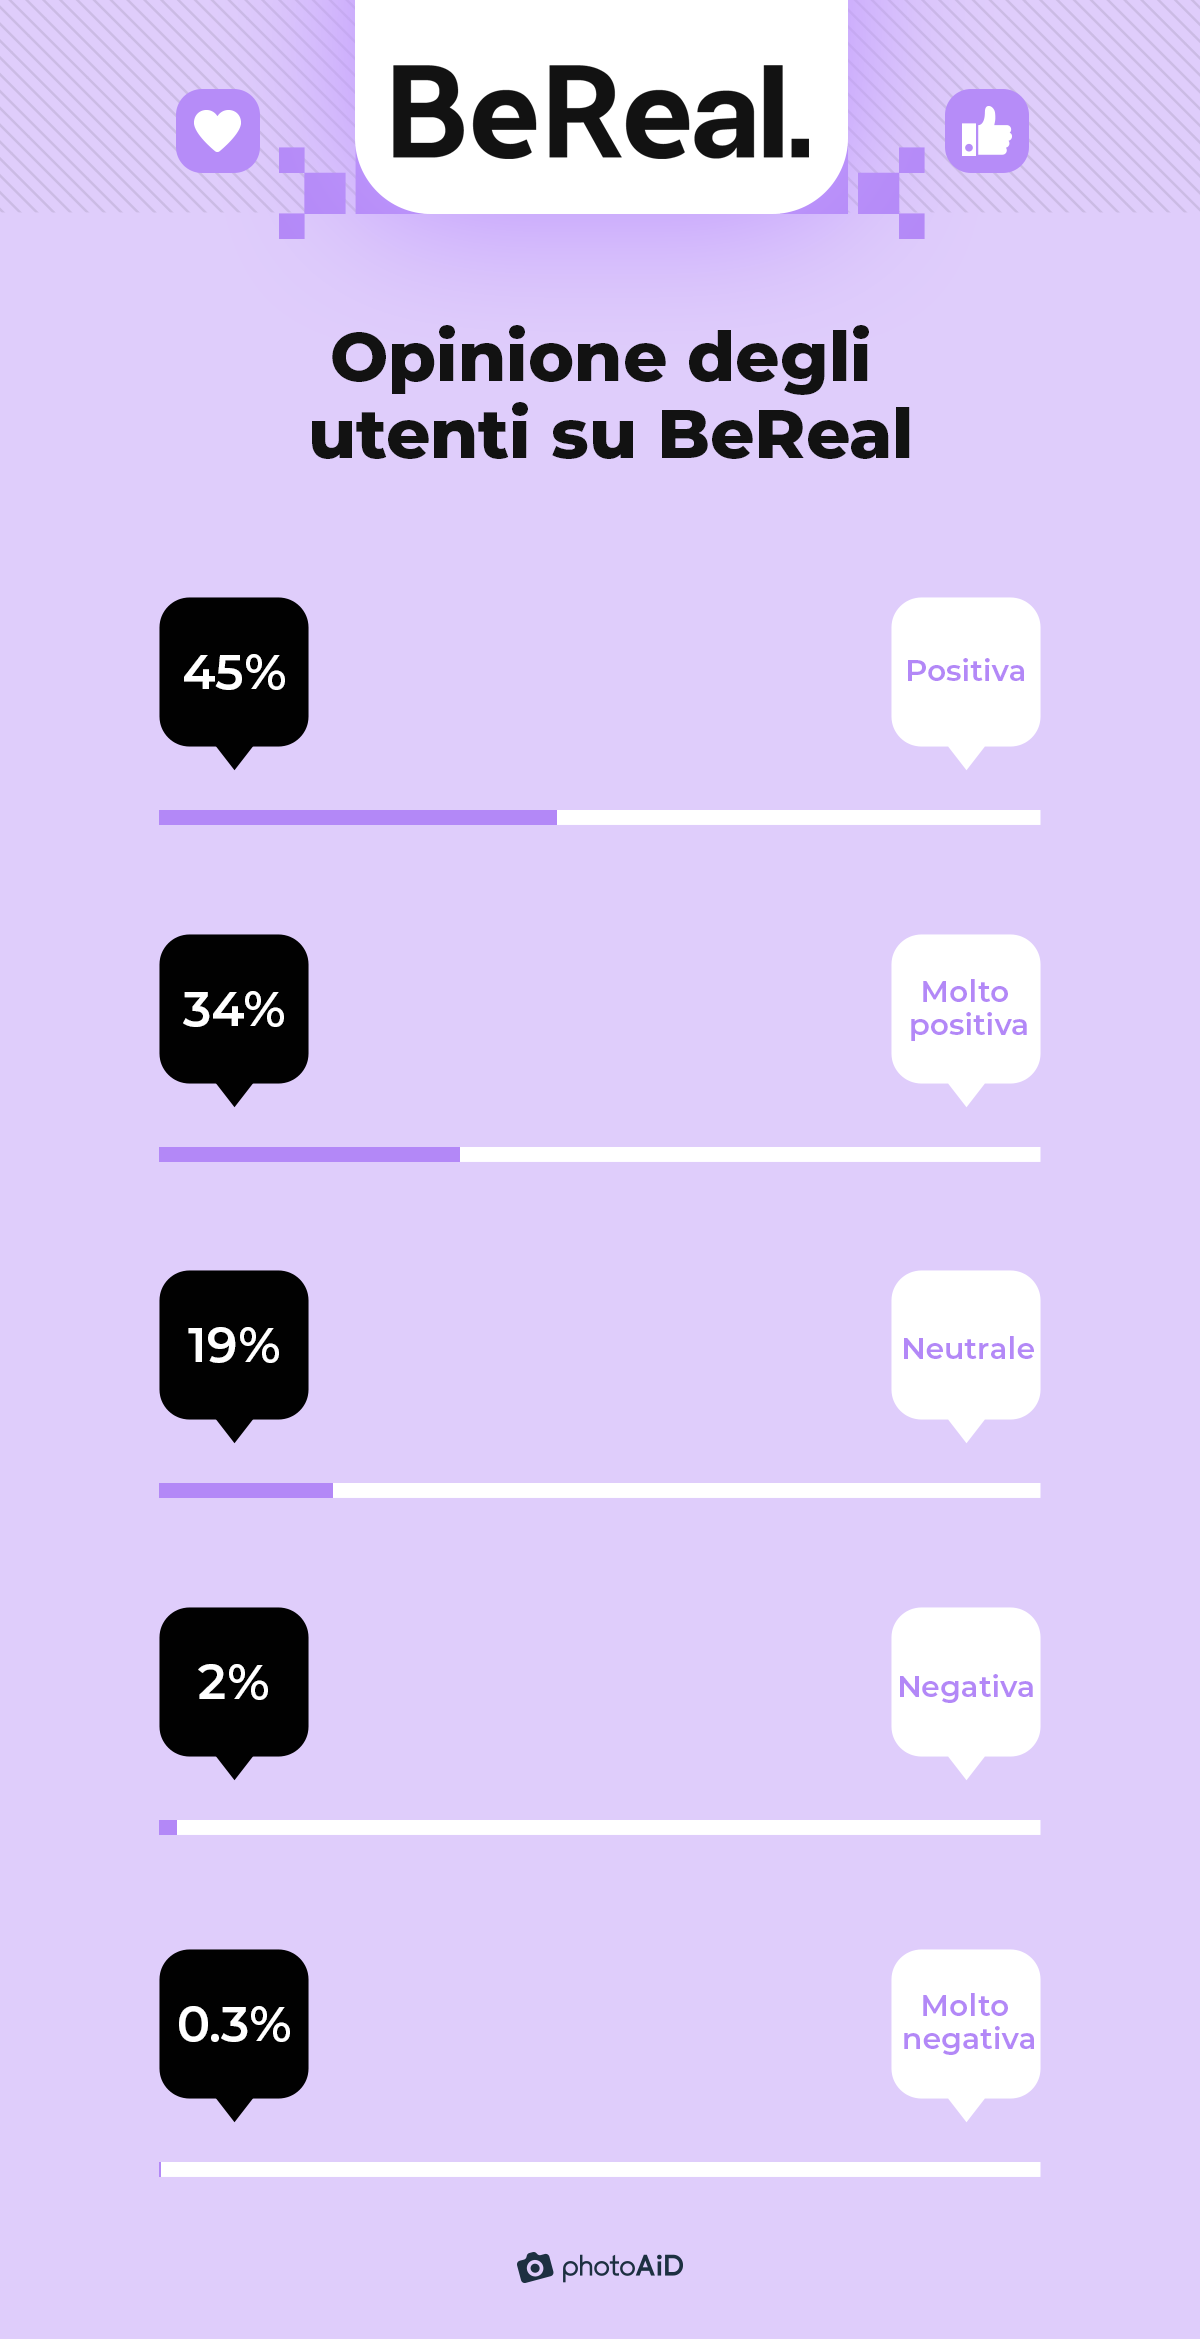 la maggior parte degli utenti (79%) ha un'opinione positiva o molto positiva su BeReal